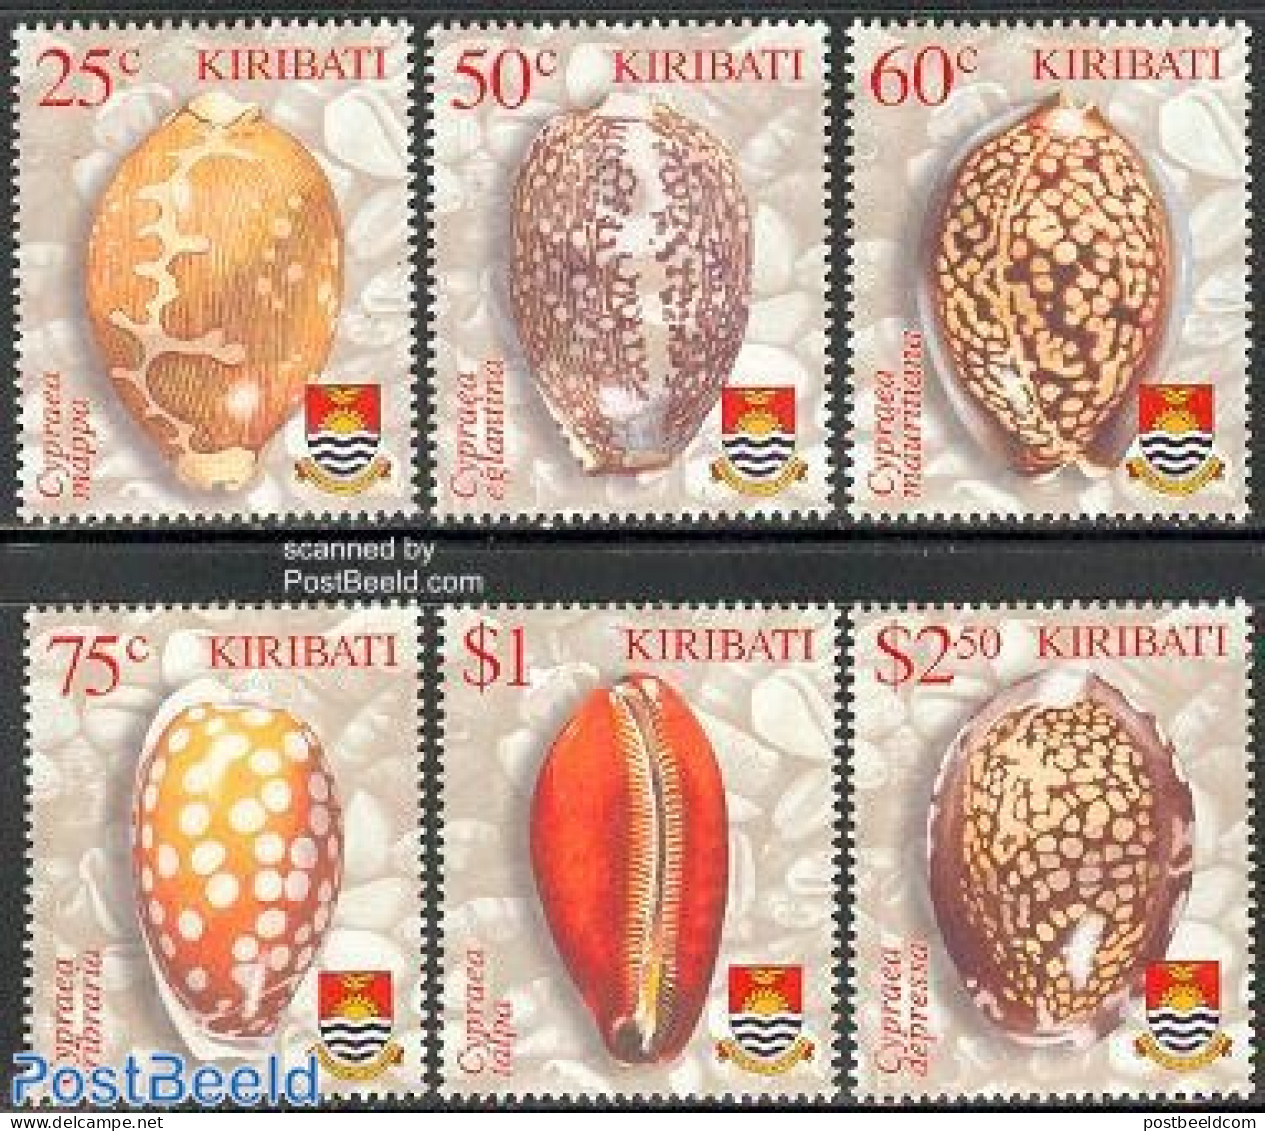 Kiribati 2003 Shells 6v, Mint NH, Nature - Shells & Crustaceans - Mundo Aquatico